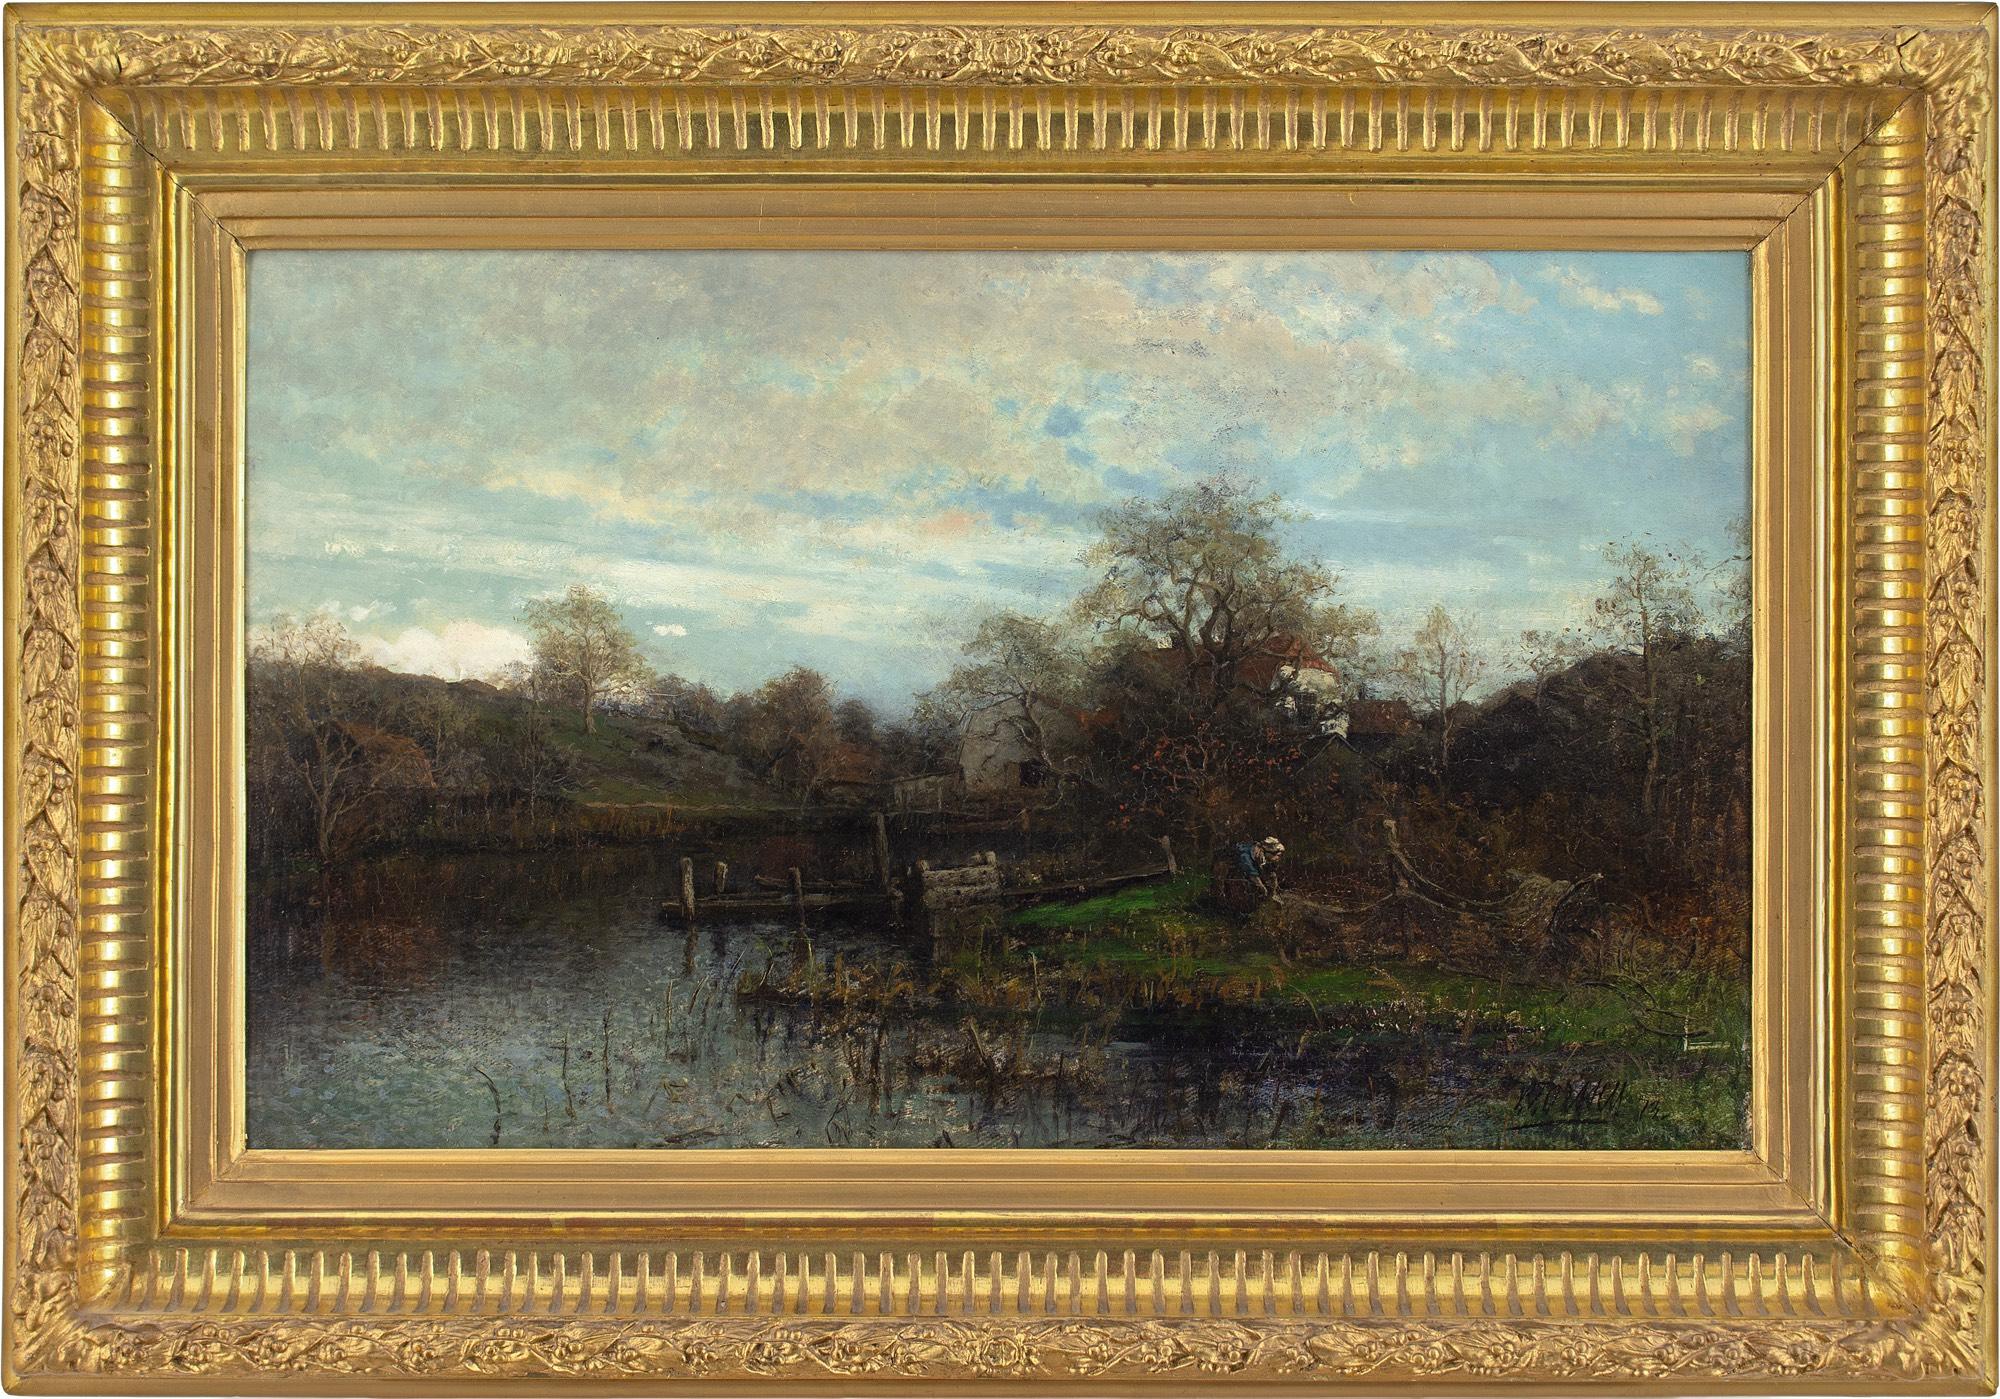 Dieses temperamentvolle Ölgemälde des schwedischen Künstlers Victor Forssell (1846-1931) aus dem 19. Jahrhundert zeigt eine Flusslandschaft mit Häusern und Figuren.

Das 1873 gemalte, erhabene Werk zeigt die majestätische Handschrift eines berühmten